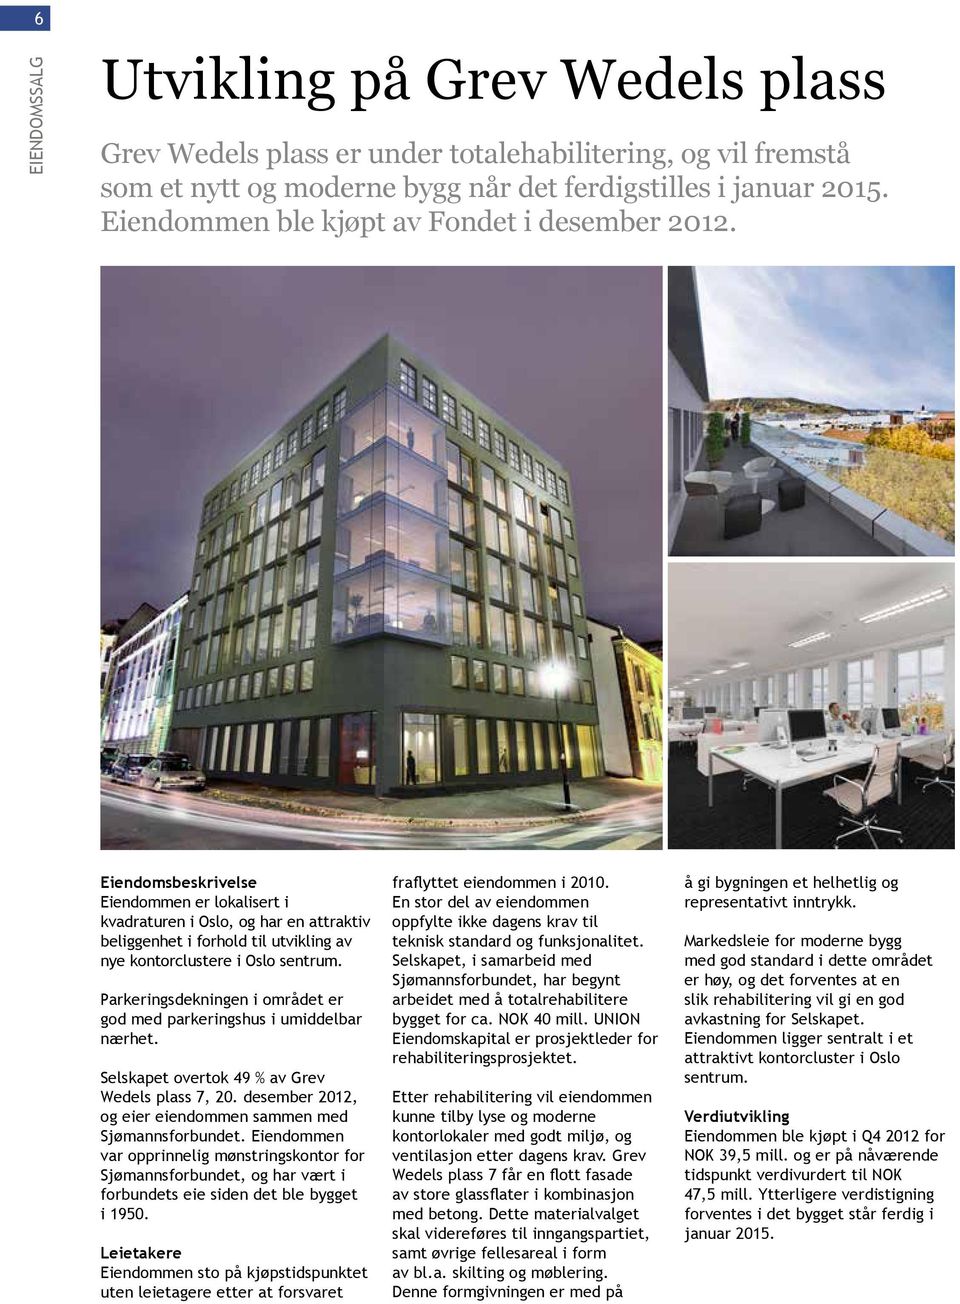 Eiendomsbeskrivelse Eiendommen er lokalisert i kvadraturen i Oslo, og har en attraktiv beliggenhet i forhold til utvikling av nye kontorclustere i Oslo sentrum.